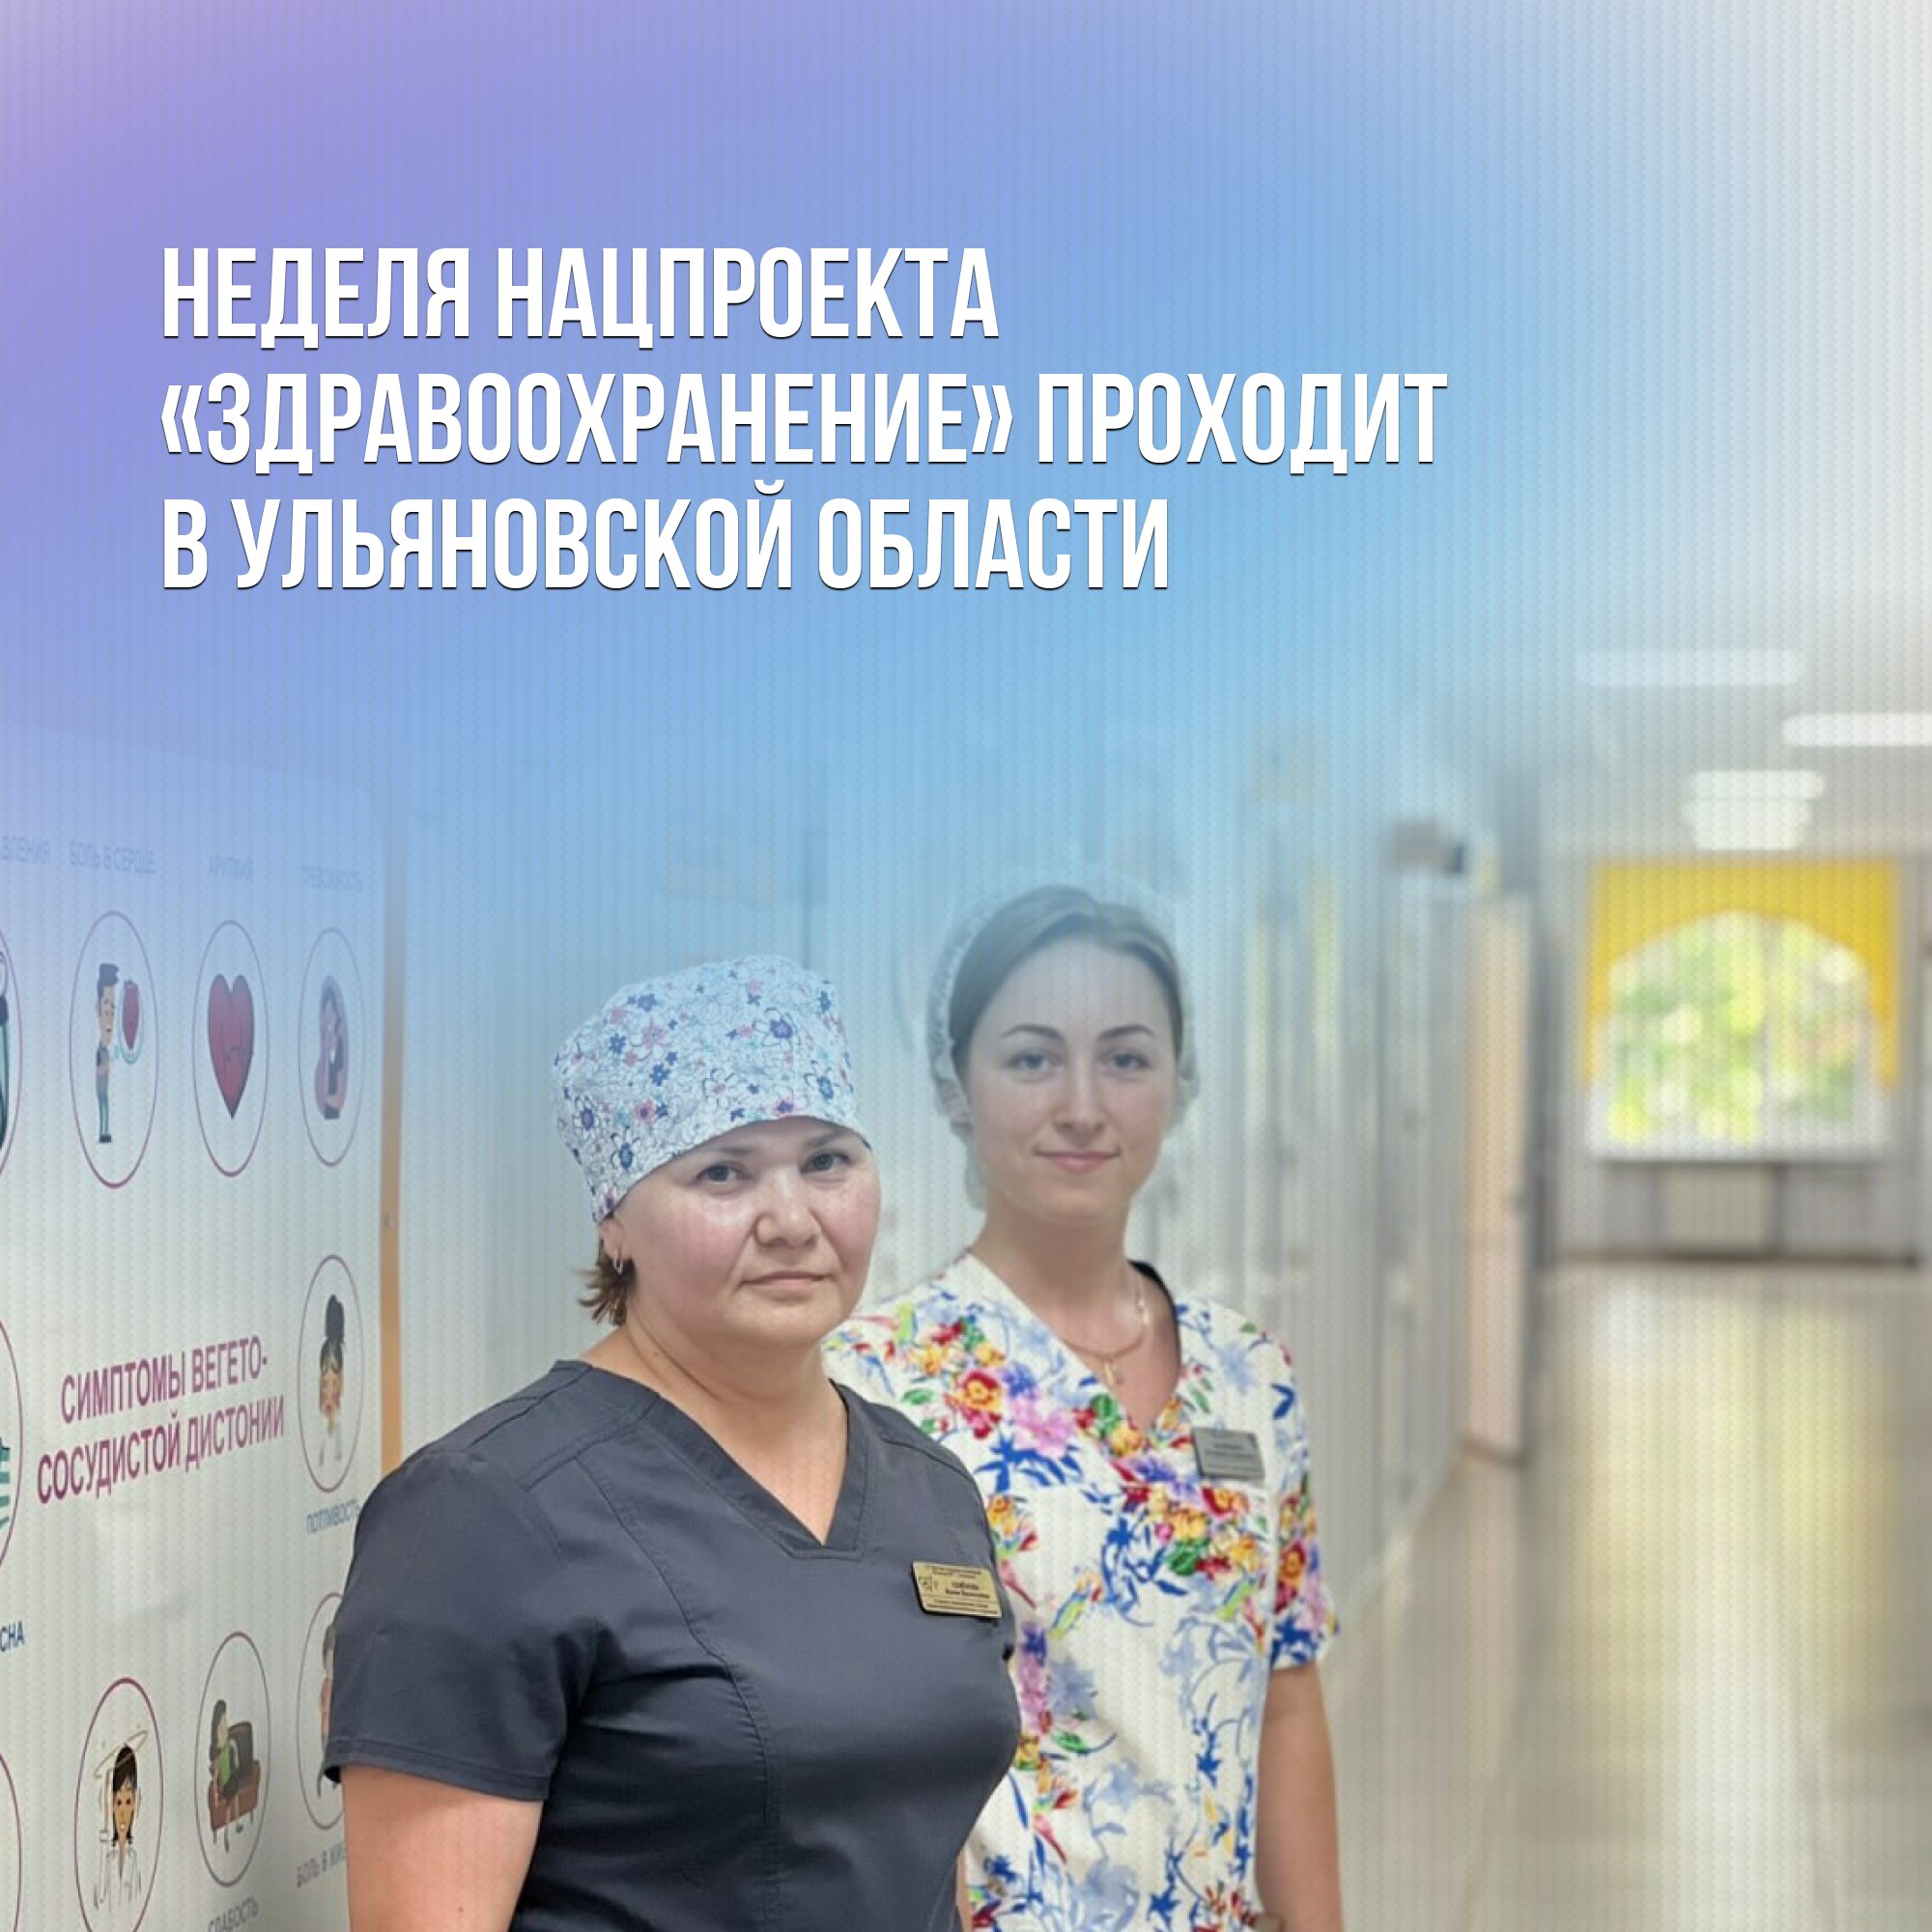 Как в Ульяновской области развивают здравоохранение и медицину?.